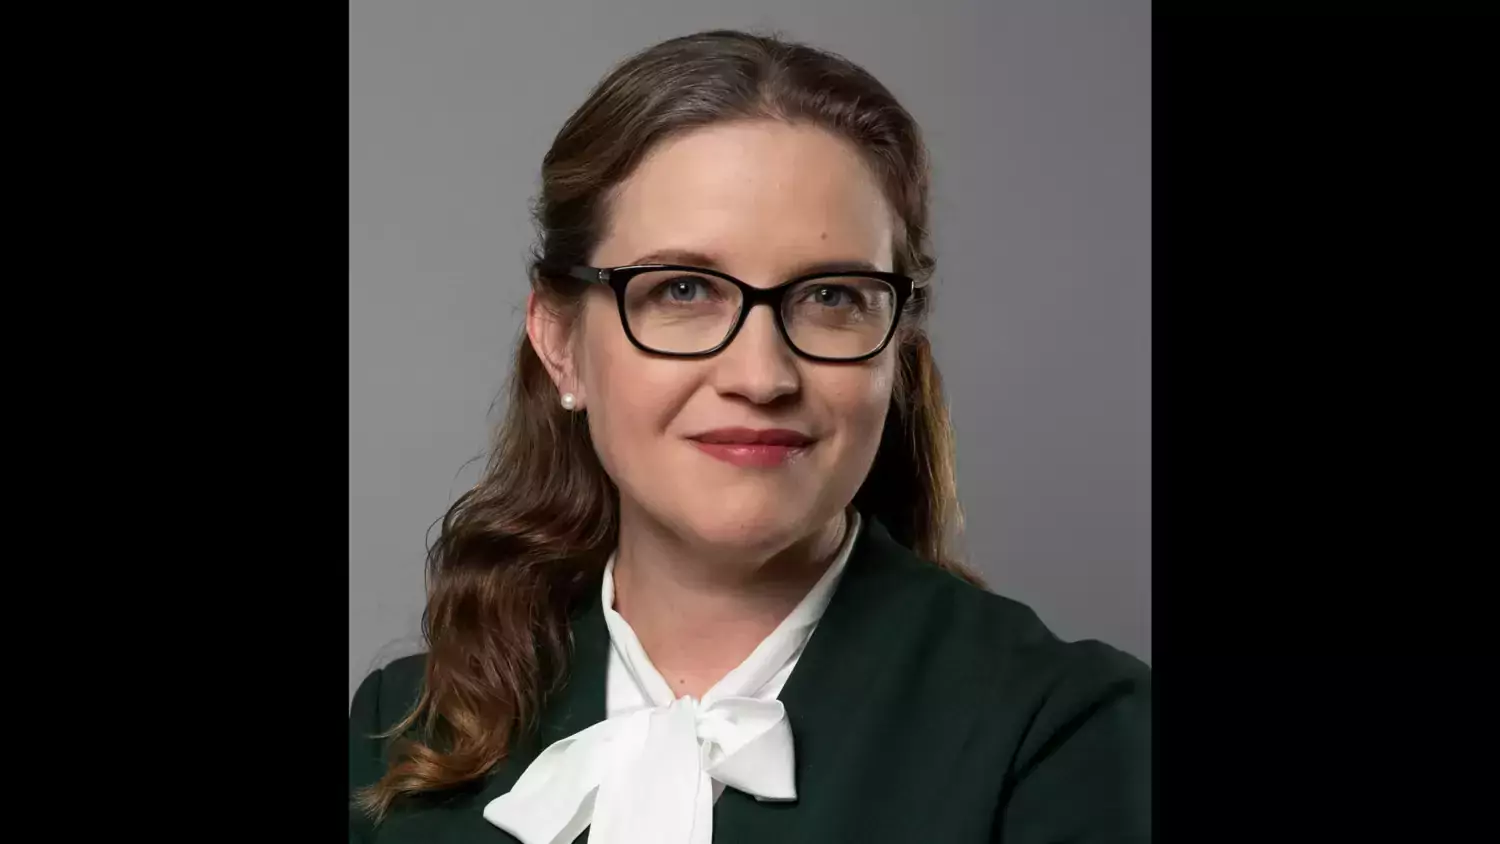 Profilfoto på Maja Fjaestad. En kvinna i vit knutblus och glasögon